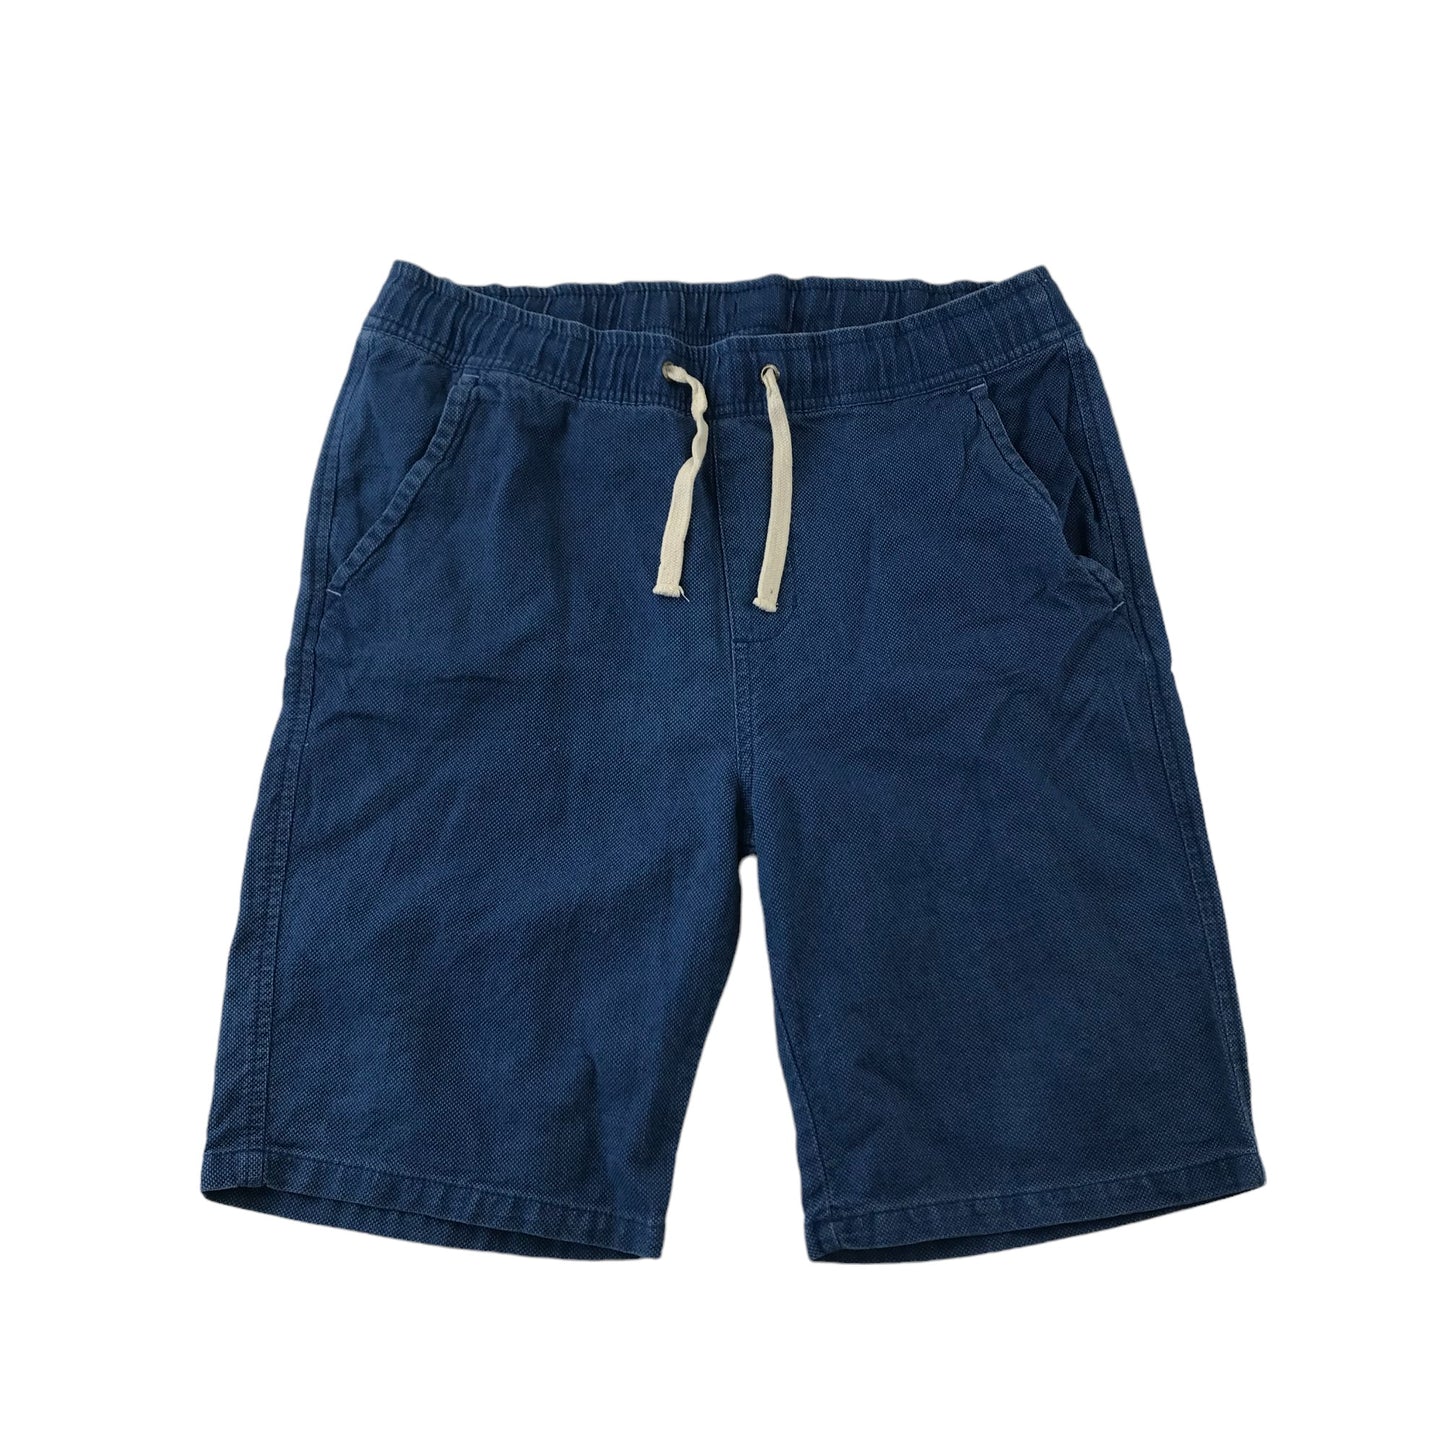 H&M Shorts Bundle Age 13 Grey and Blue Linen Cotton Blend